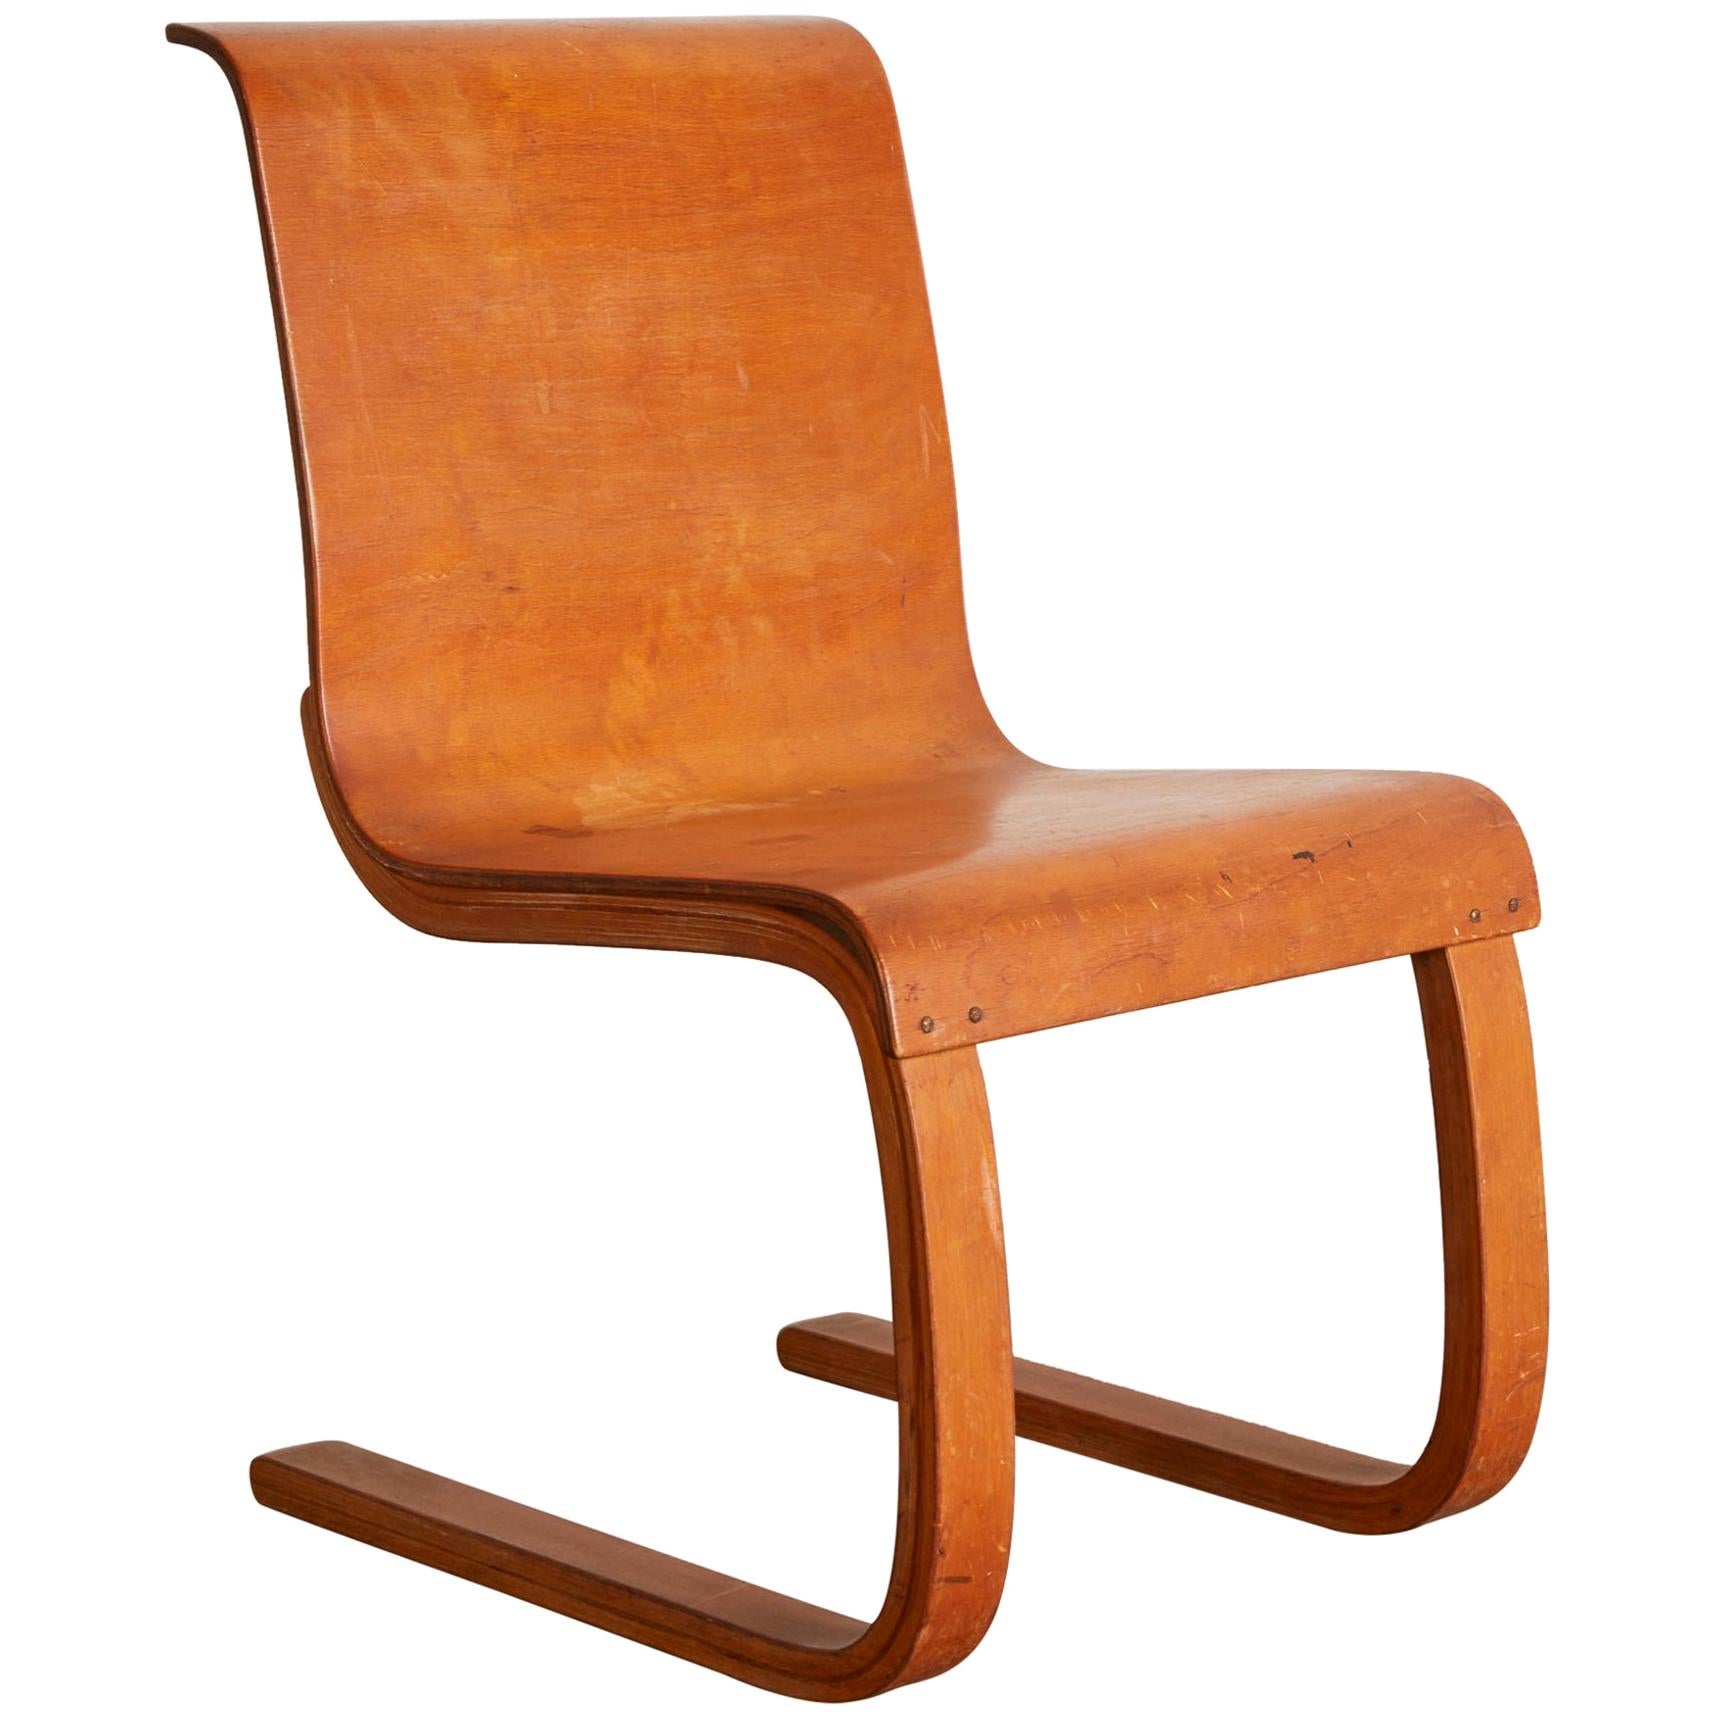 "Cantilever Chair" Model no. 21 by Alvar Aalto, circa 1938